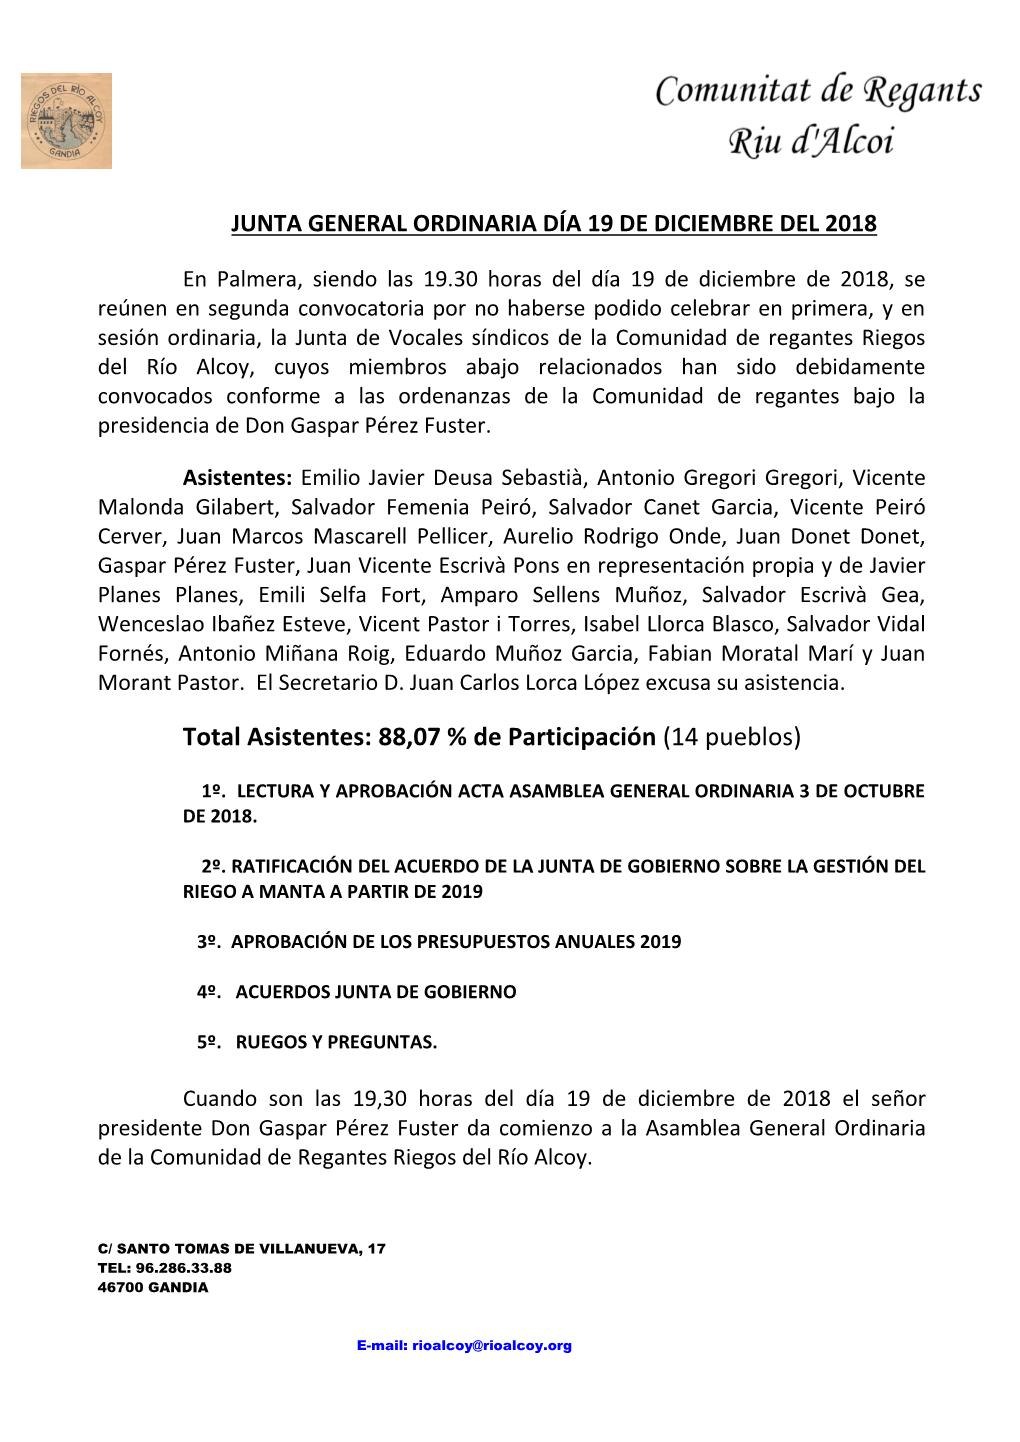 Total Asistentes: 88,07 % De Participación (14 Pueblos)